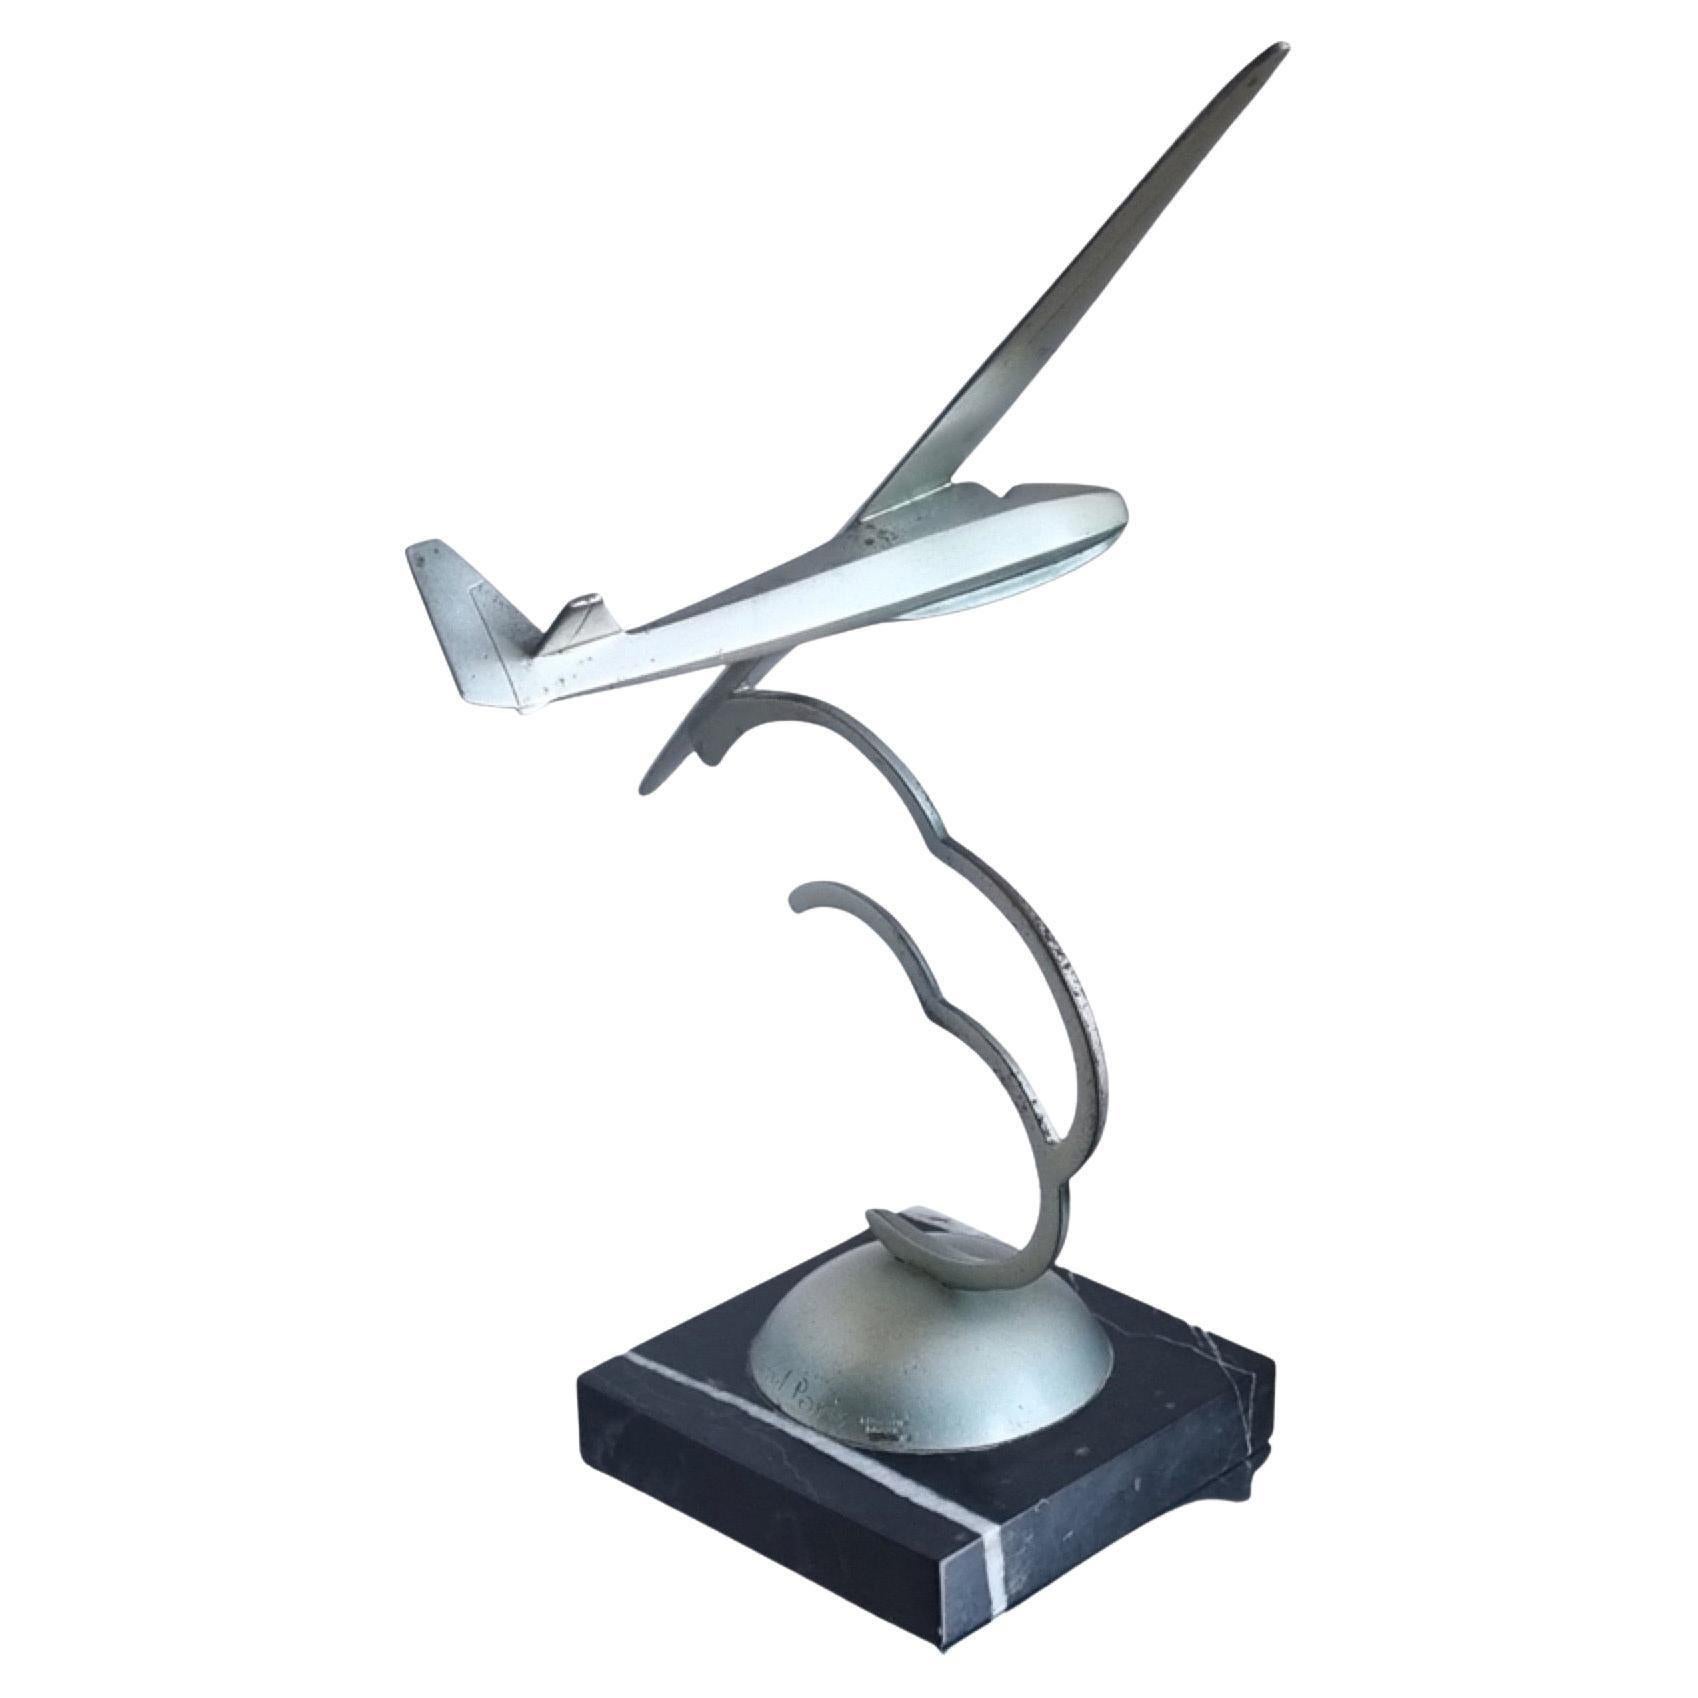 Statue en bronze de Roland Paris Planeur 1933. Ce planeur était à l'origine basé sur le Schneider Grunau Baby Glider de 1931. Il détient le record du monde du plus long vol continu, plus de 22 heures, et reste le planeur le plus piloté jusqu'en